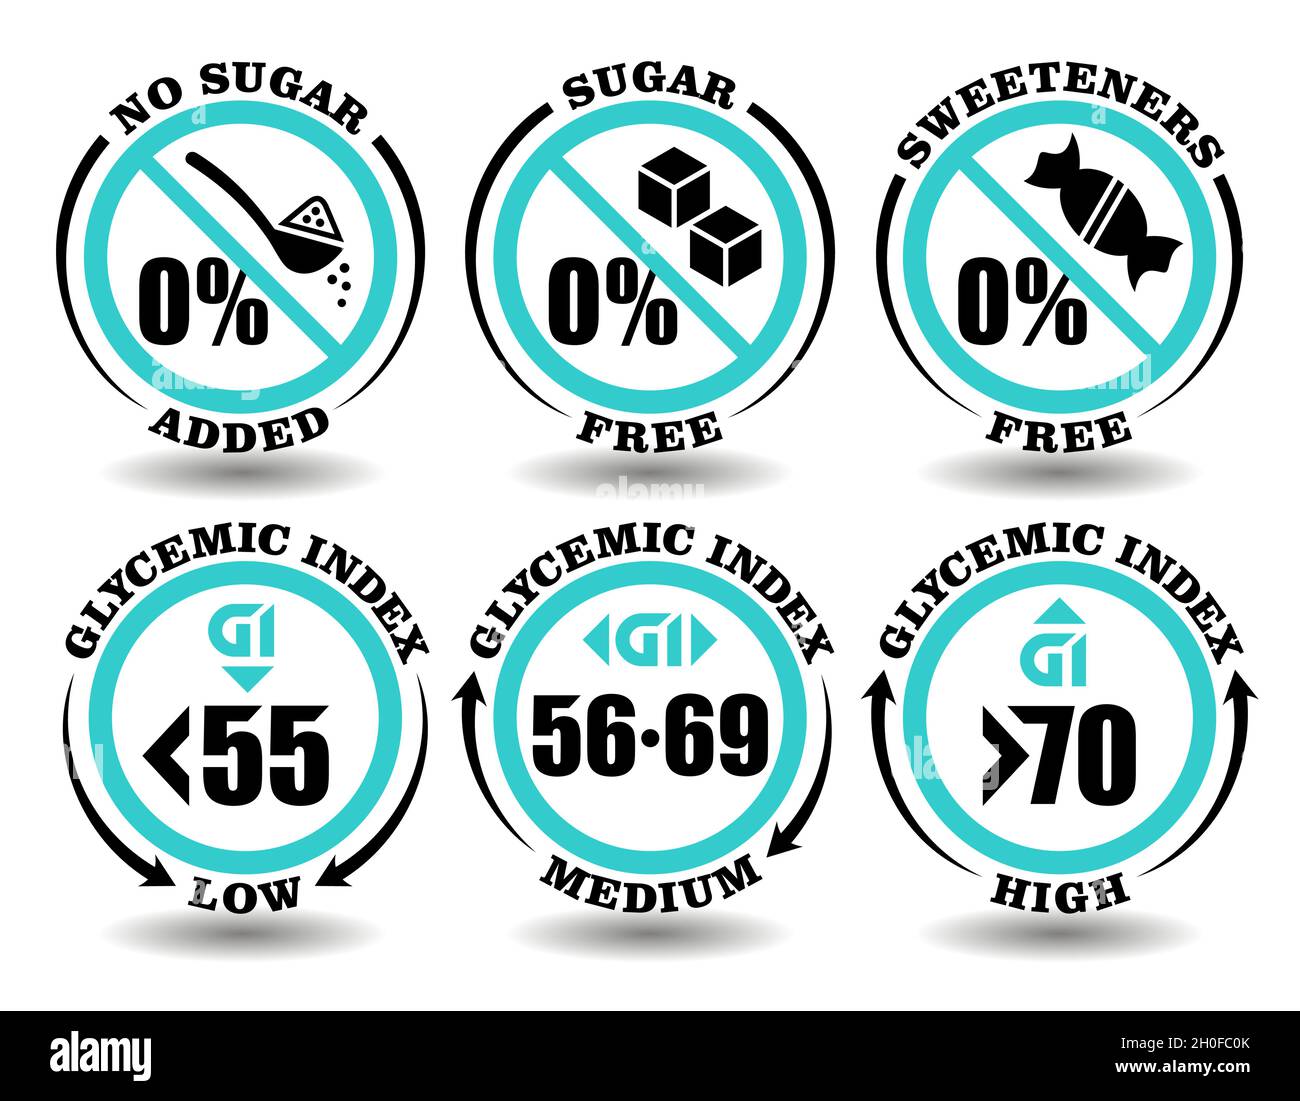 Konzept Zeichen Satz von runden Symbolen Zuckerfreie Mahlzeit, Süßstoff Freie Nahrung, kein Zucker Produkt hinzugefügt. Niedrige, mittlere, hohe glykämische Index Diät für die Verpackung von h Stock Vektor